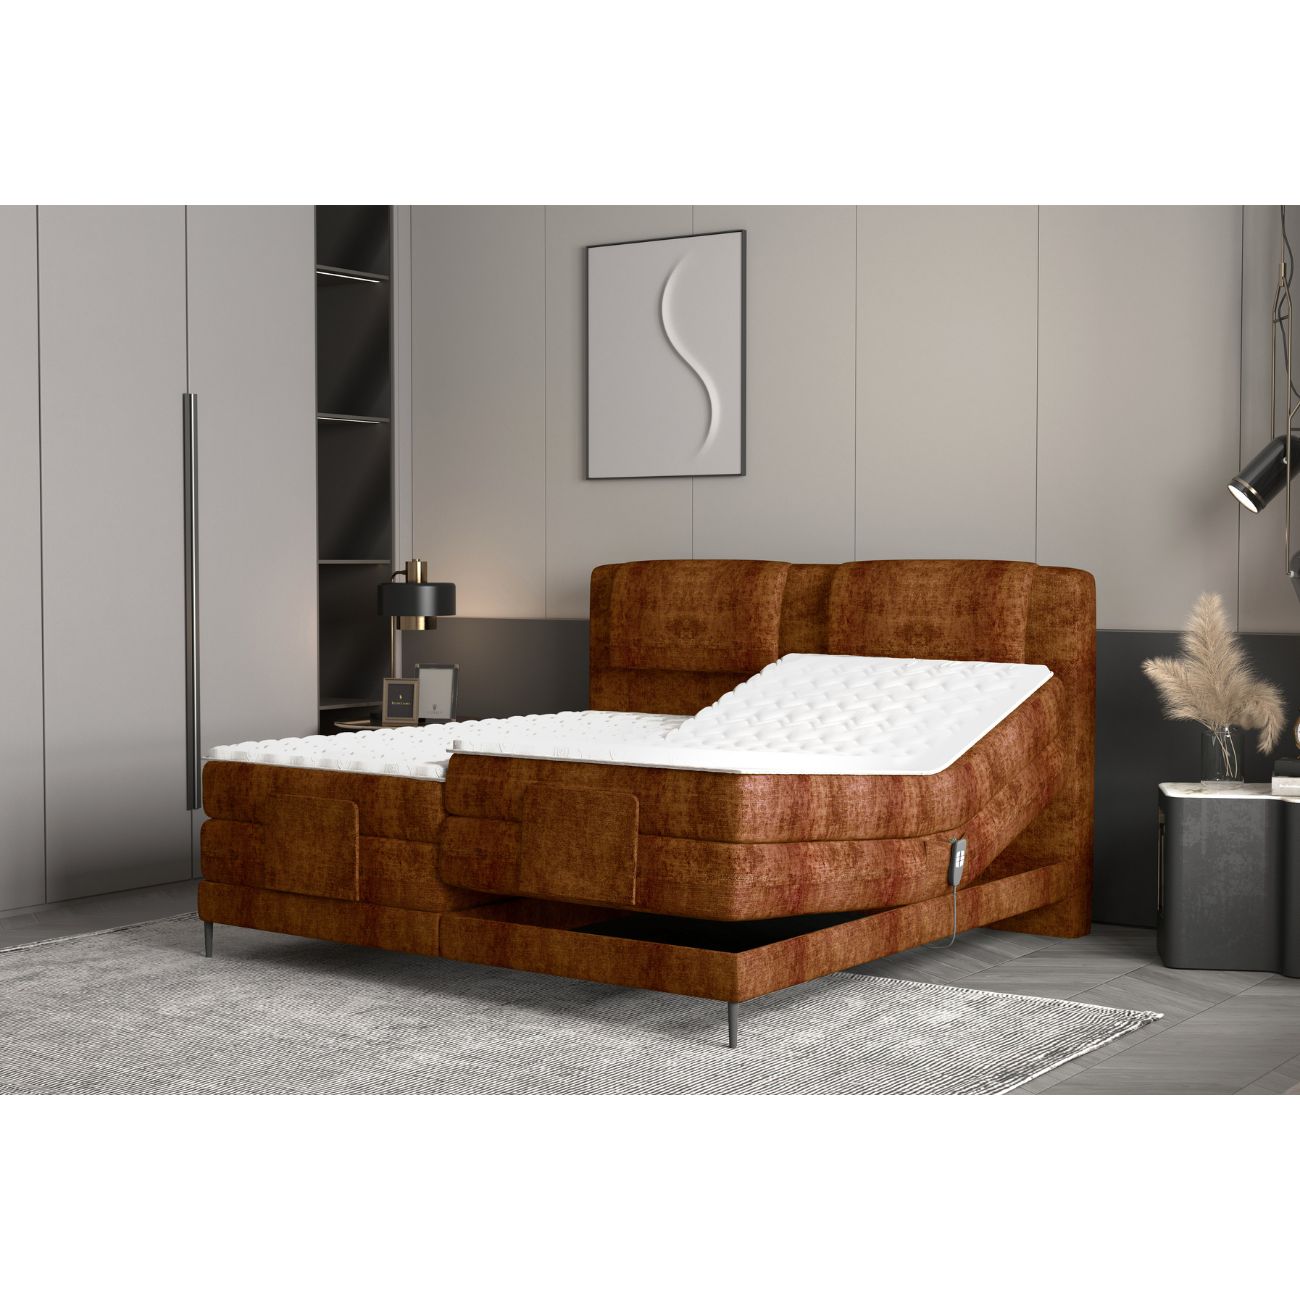 Zdjęcie przedstawiające przykładową aranżację nowoczesnego łóżka Wave ekskluzywnej marki Wersal.